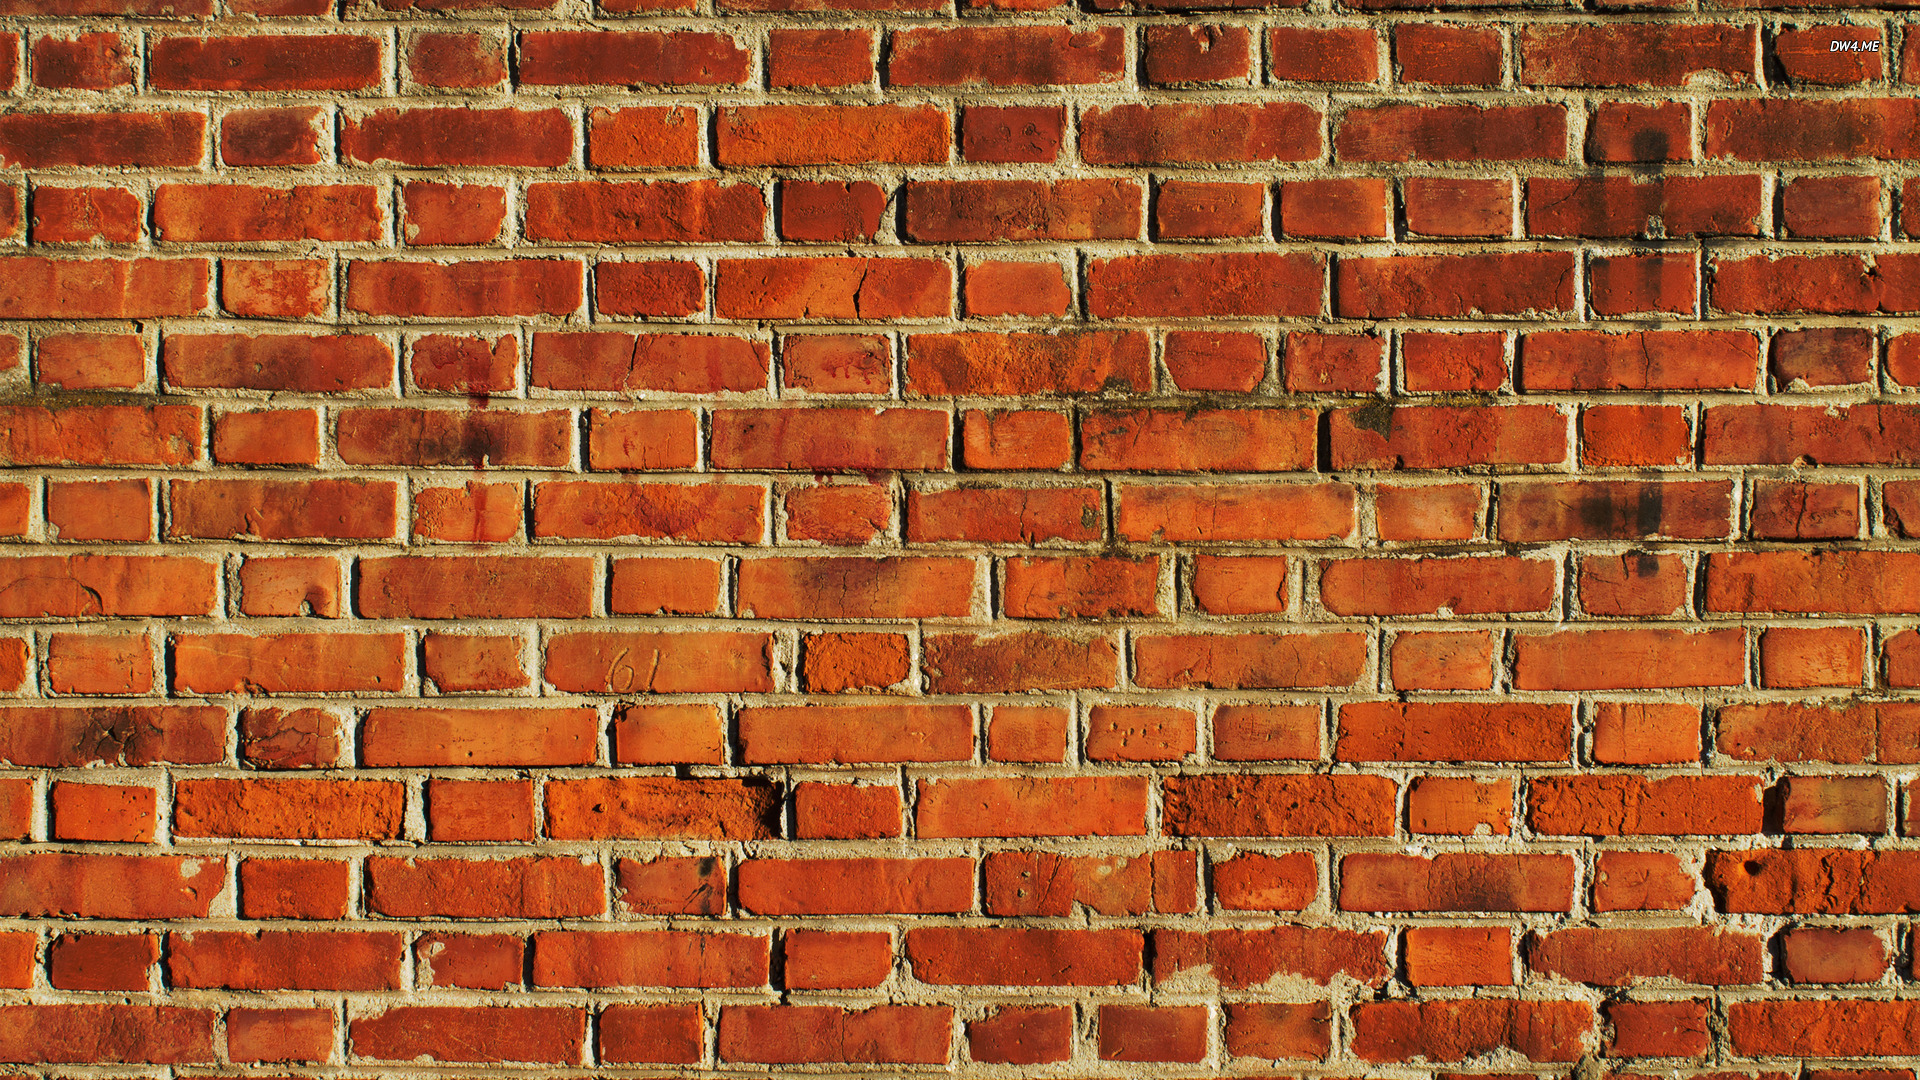 brick wall wallpaper photography wallpapers brick wall wallpaper